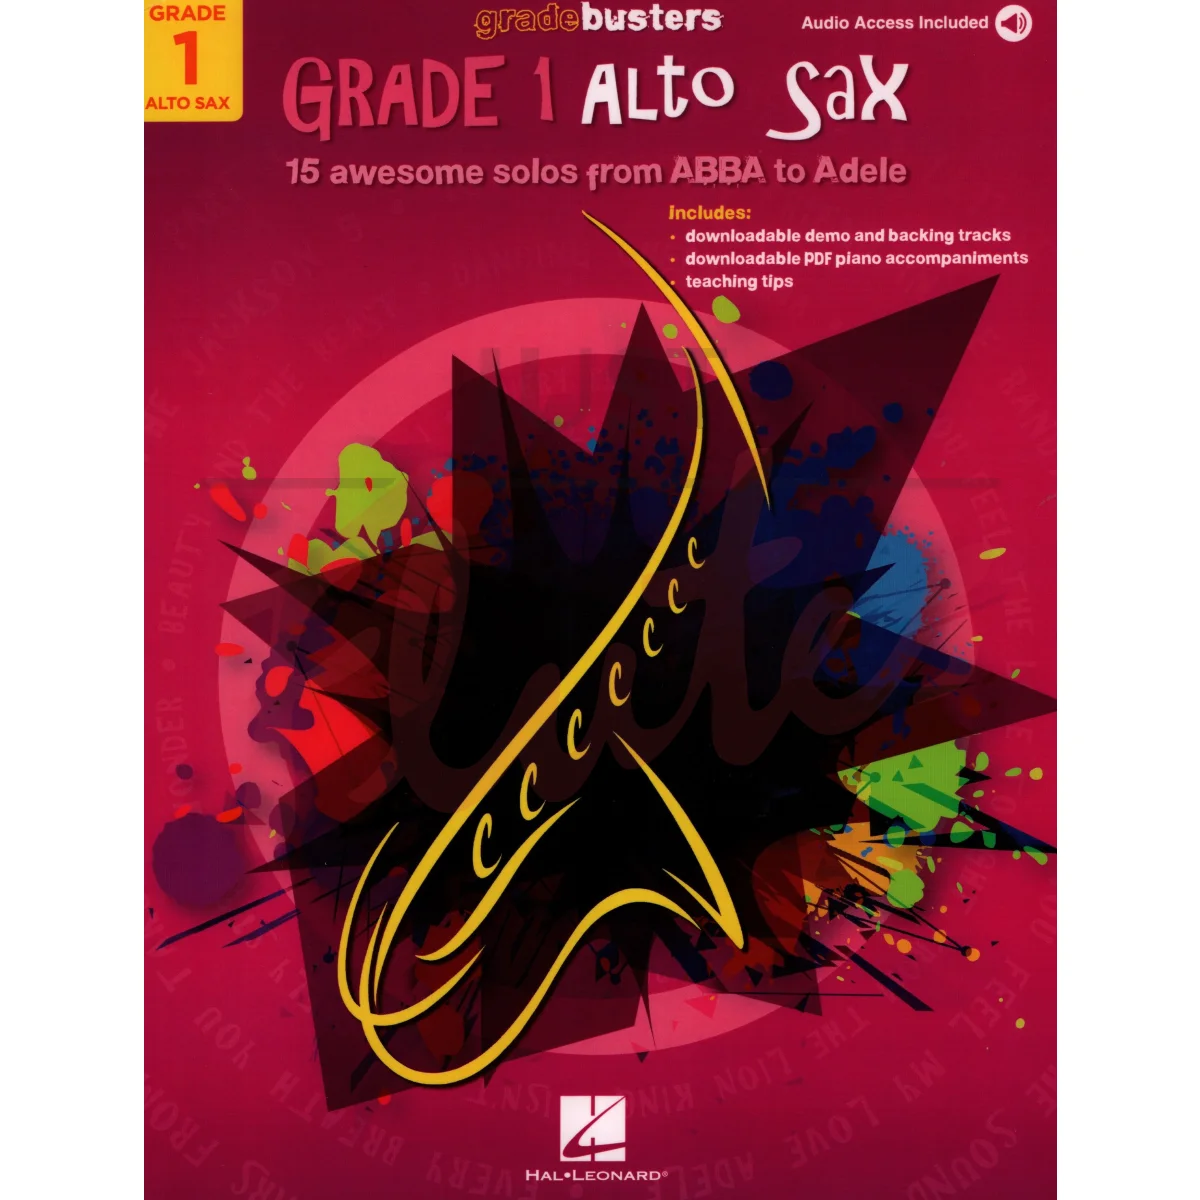 Gradebusters Grade 1 - Alto Sax